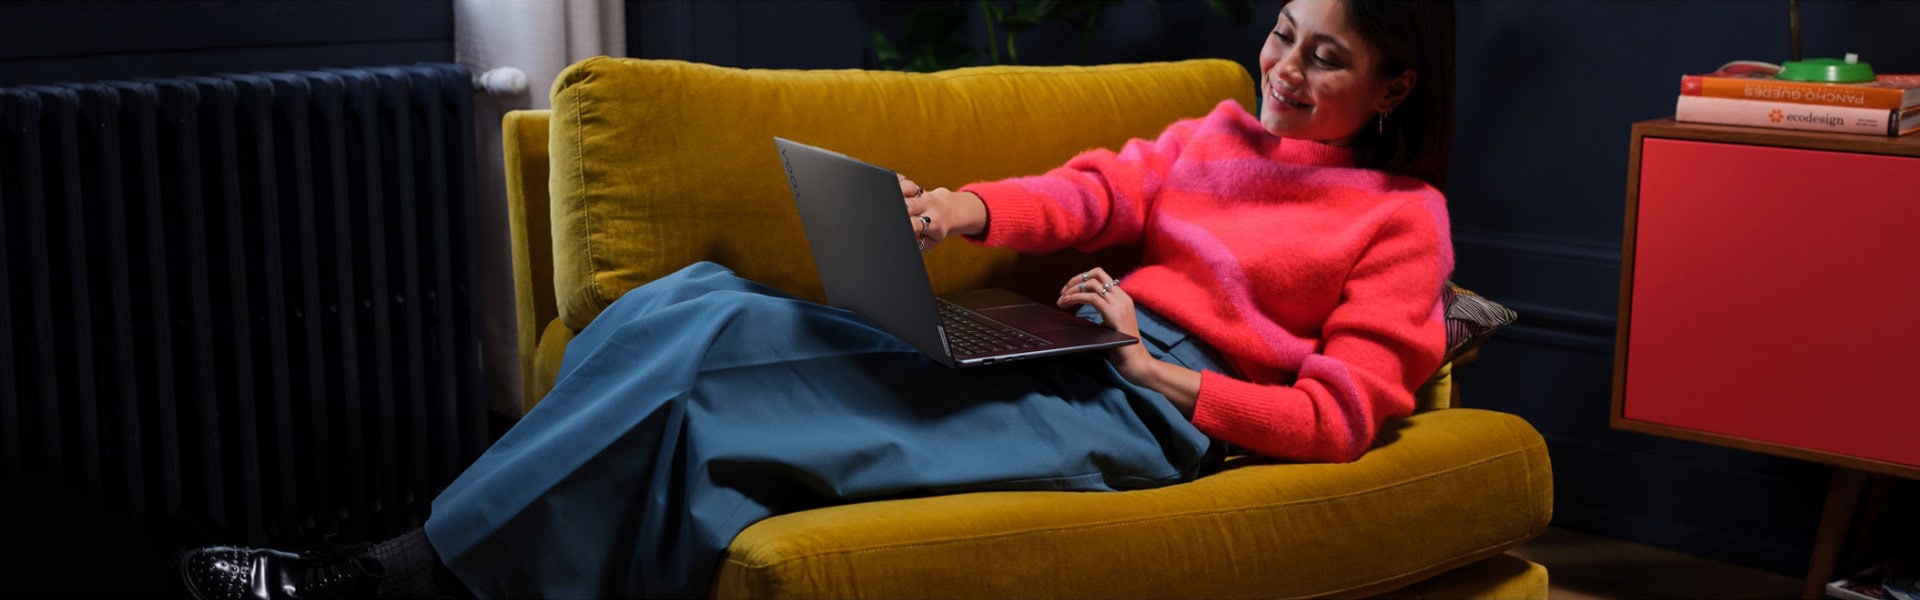 Egy nagy székben fekvő nő, ölében Lenovo Yoga laptopjával